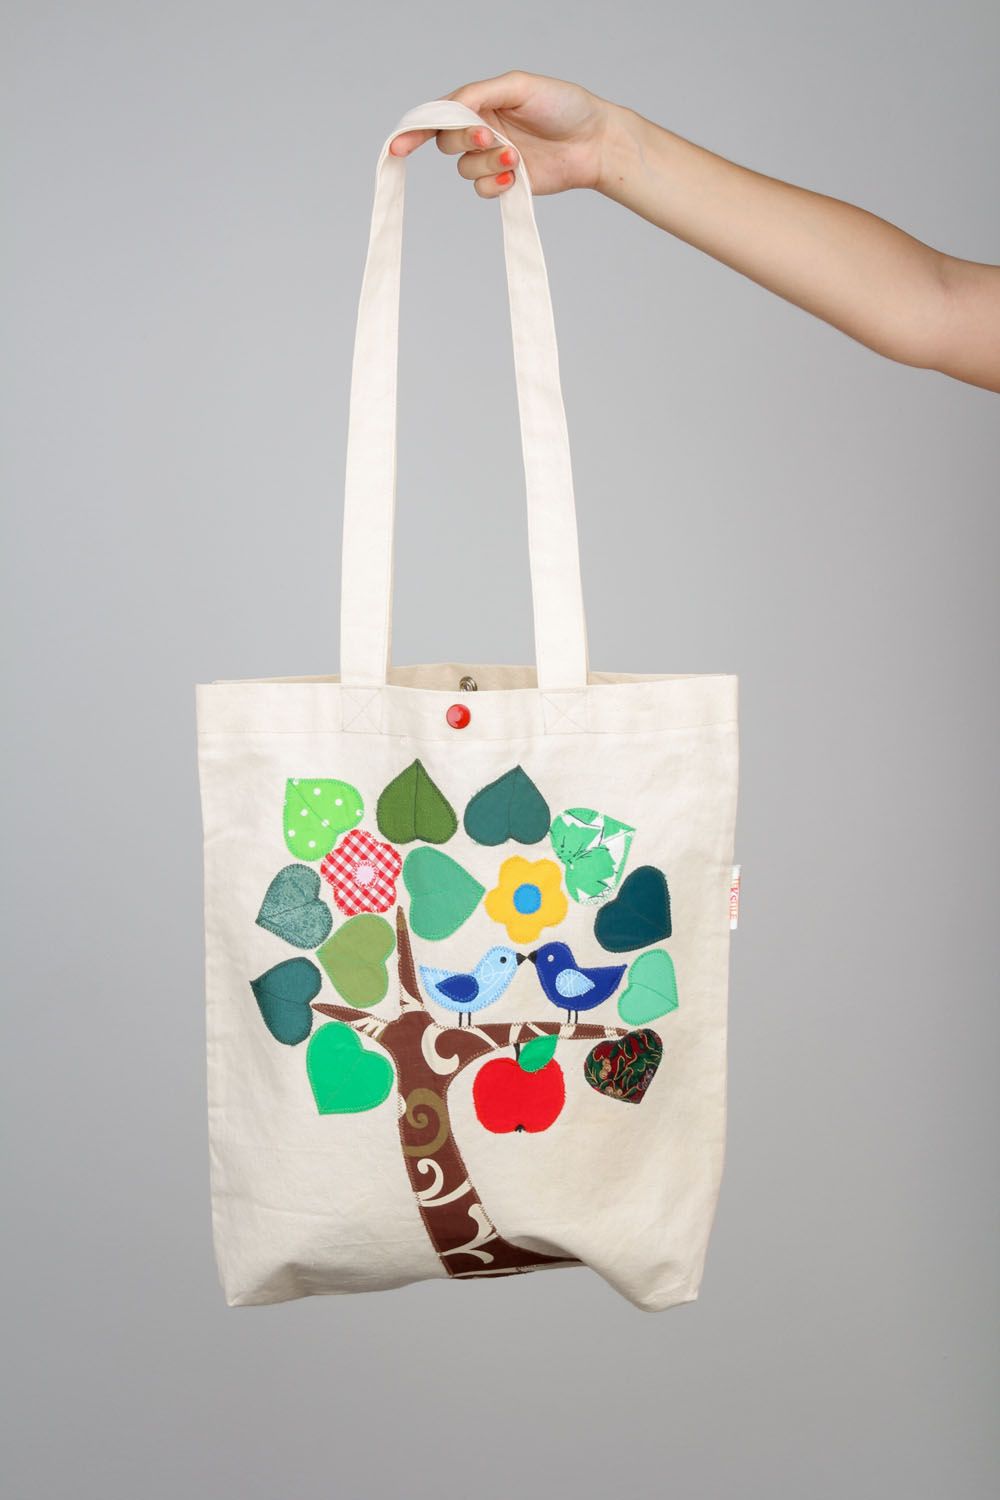 Textil Tasche mit Baum des Glücks  foto 2